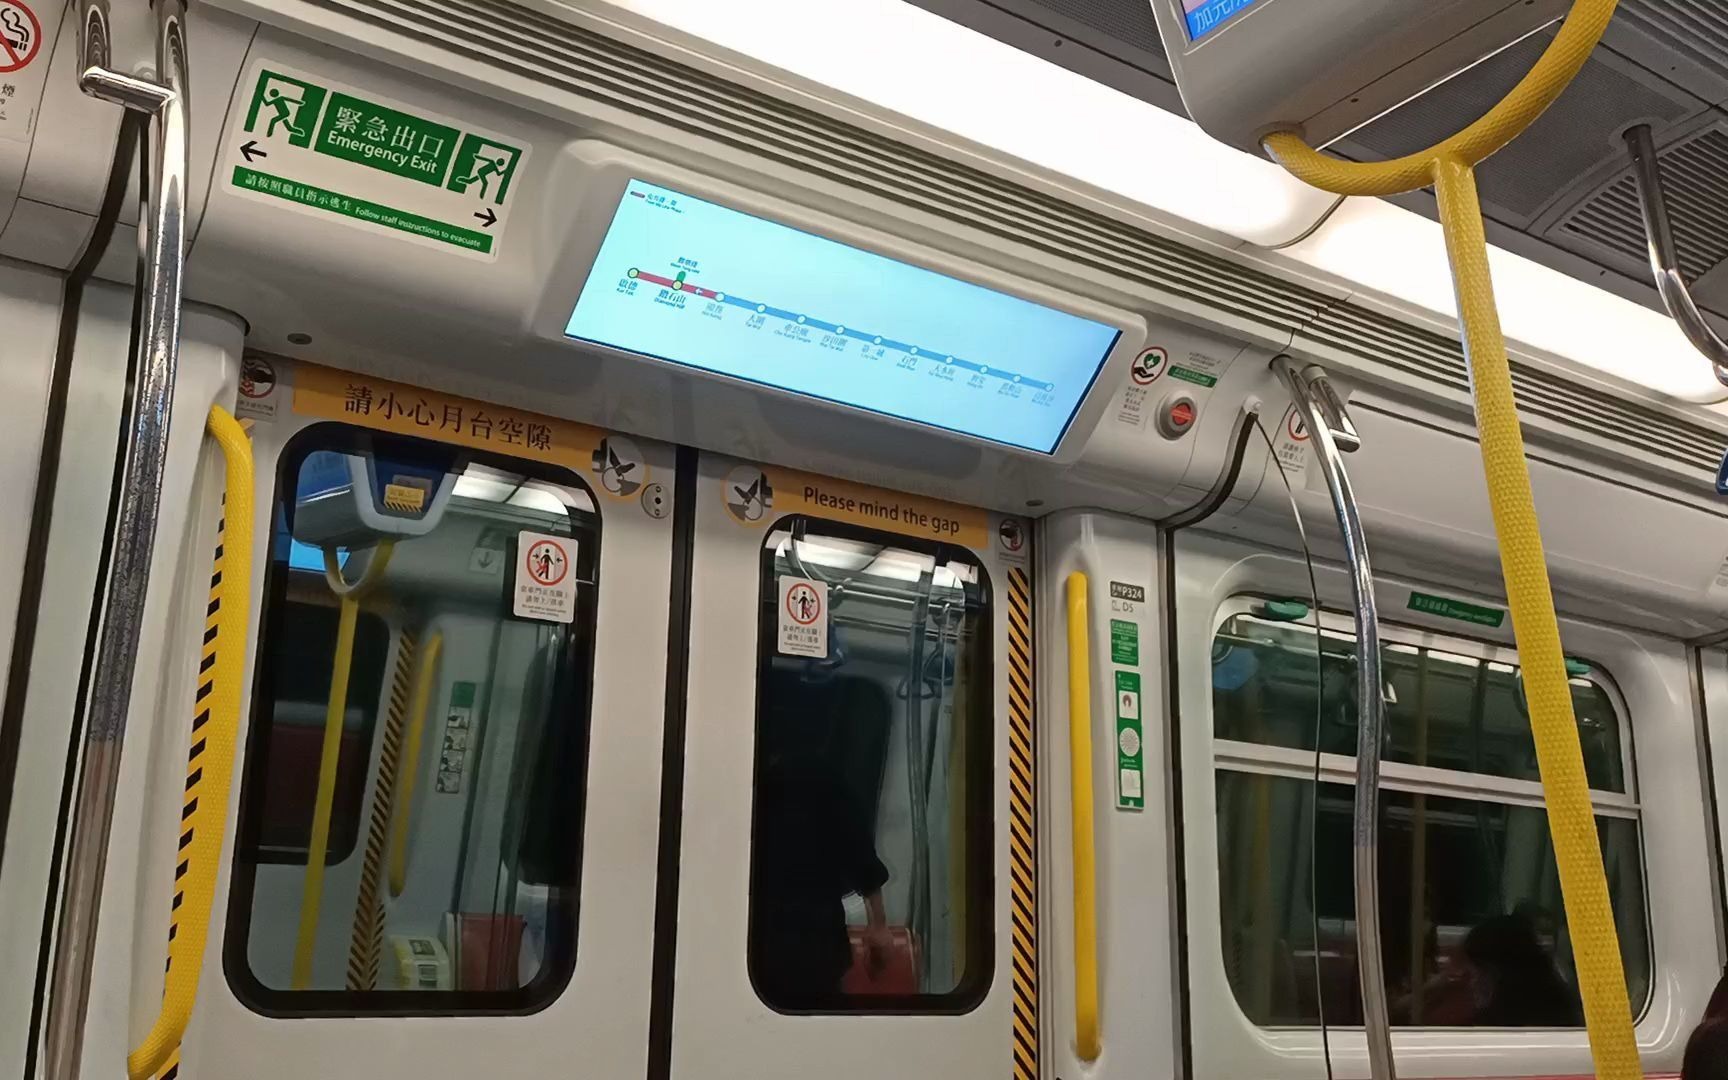 香港地铁西铁线图片